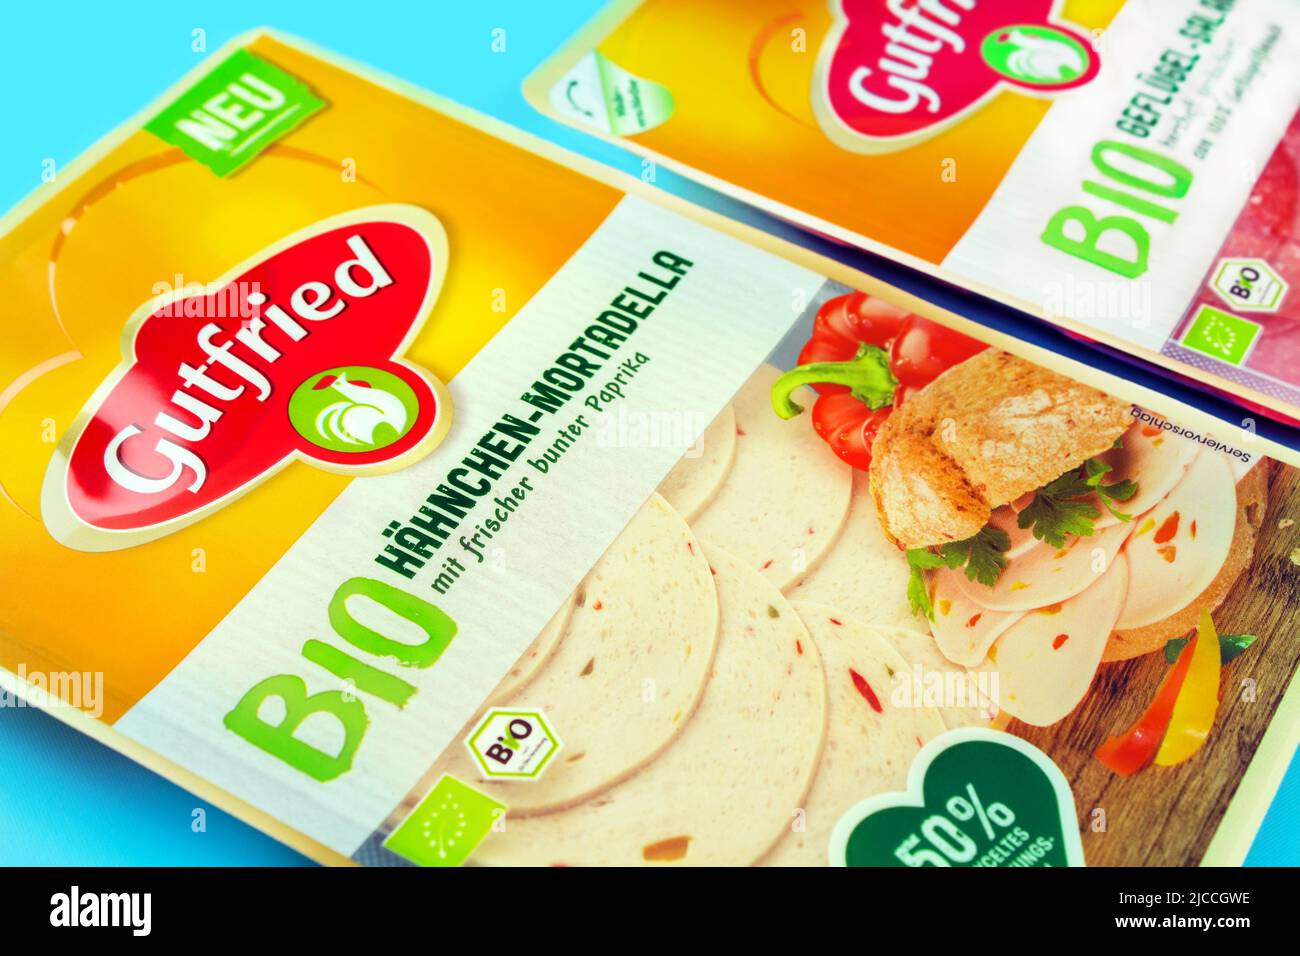 Deutsche Bio Produkte von Gutfried mit Wurstsorten und Verpackung mit EU-Siegel Stock Photo